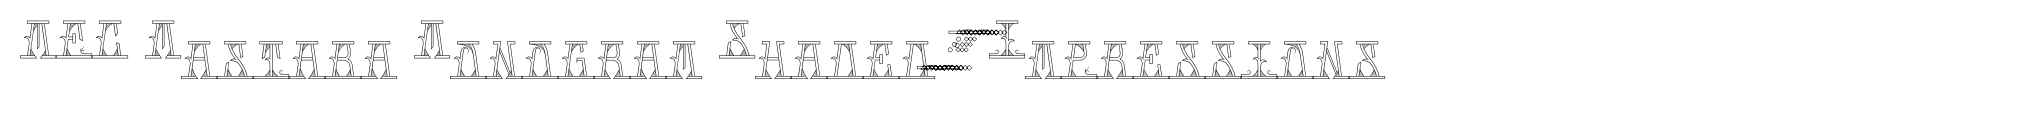 MFC Mastaba Monogram Shaded 25000 Impressions image